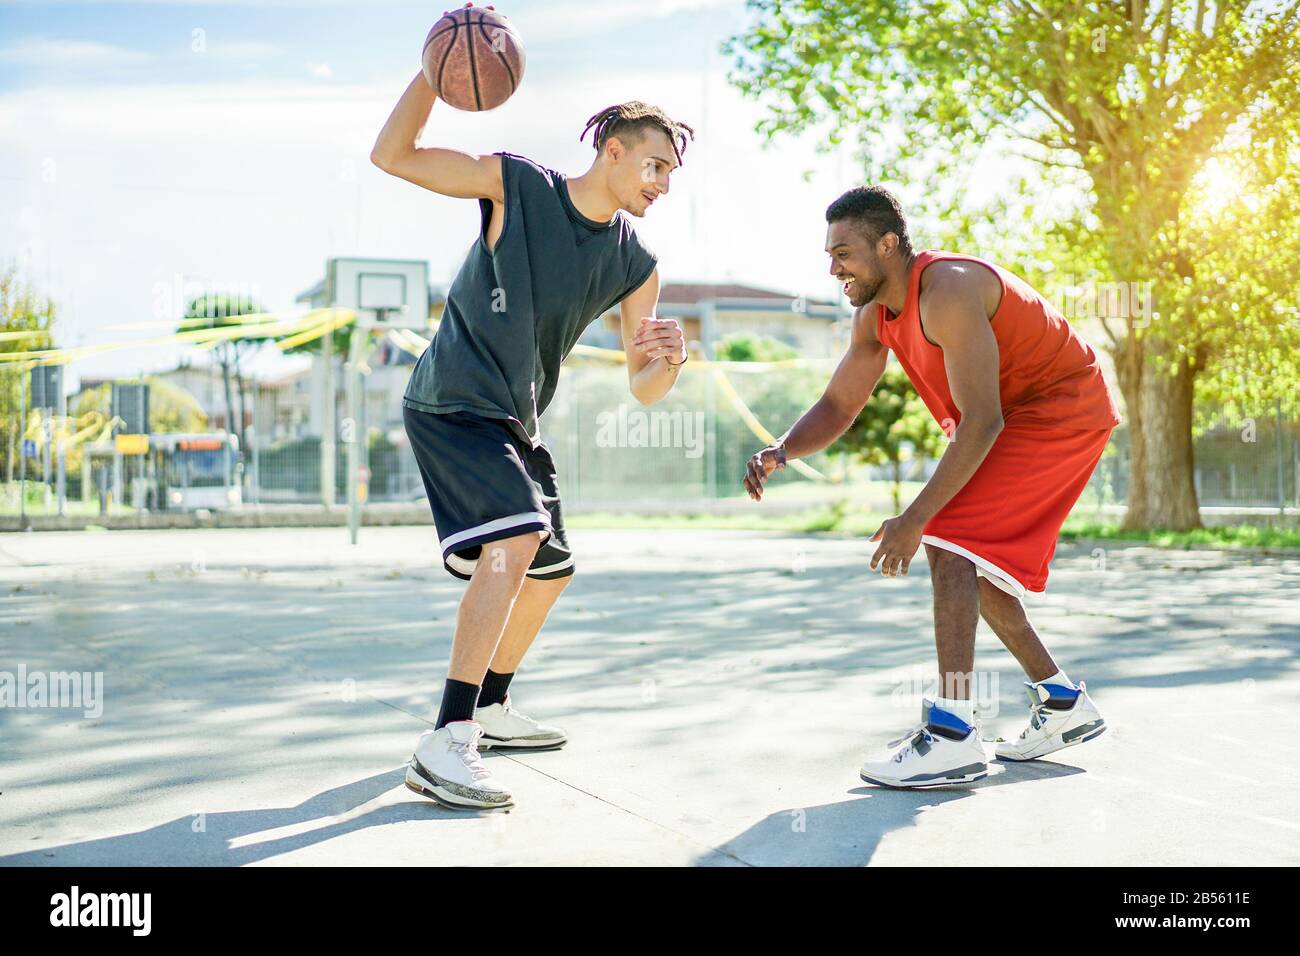 Zwei multirassisch fröhliche Freunde, die in städtischen Städten Basketball spielen, wetteifern mit Rückenlicht - Junge Leute, die Spaß haben, Sport für ein gesundes zu treiben Stockfoto